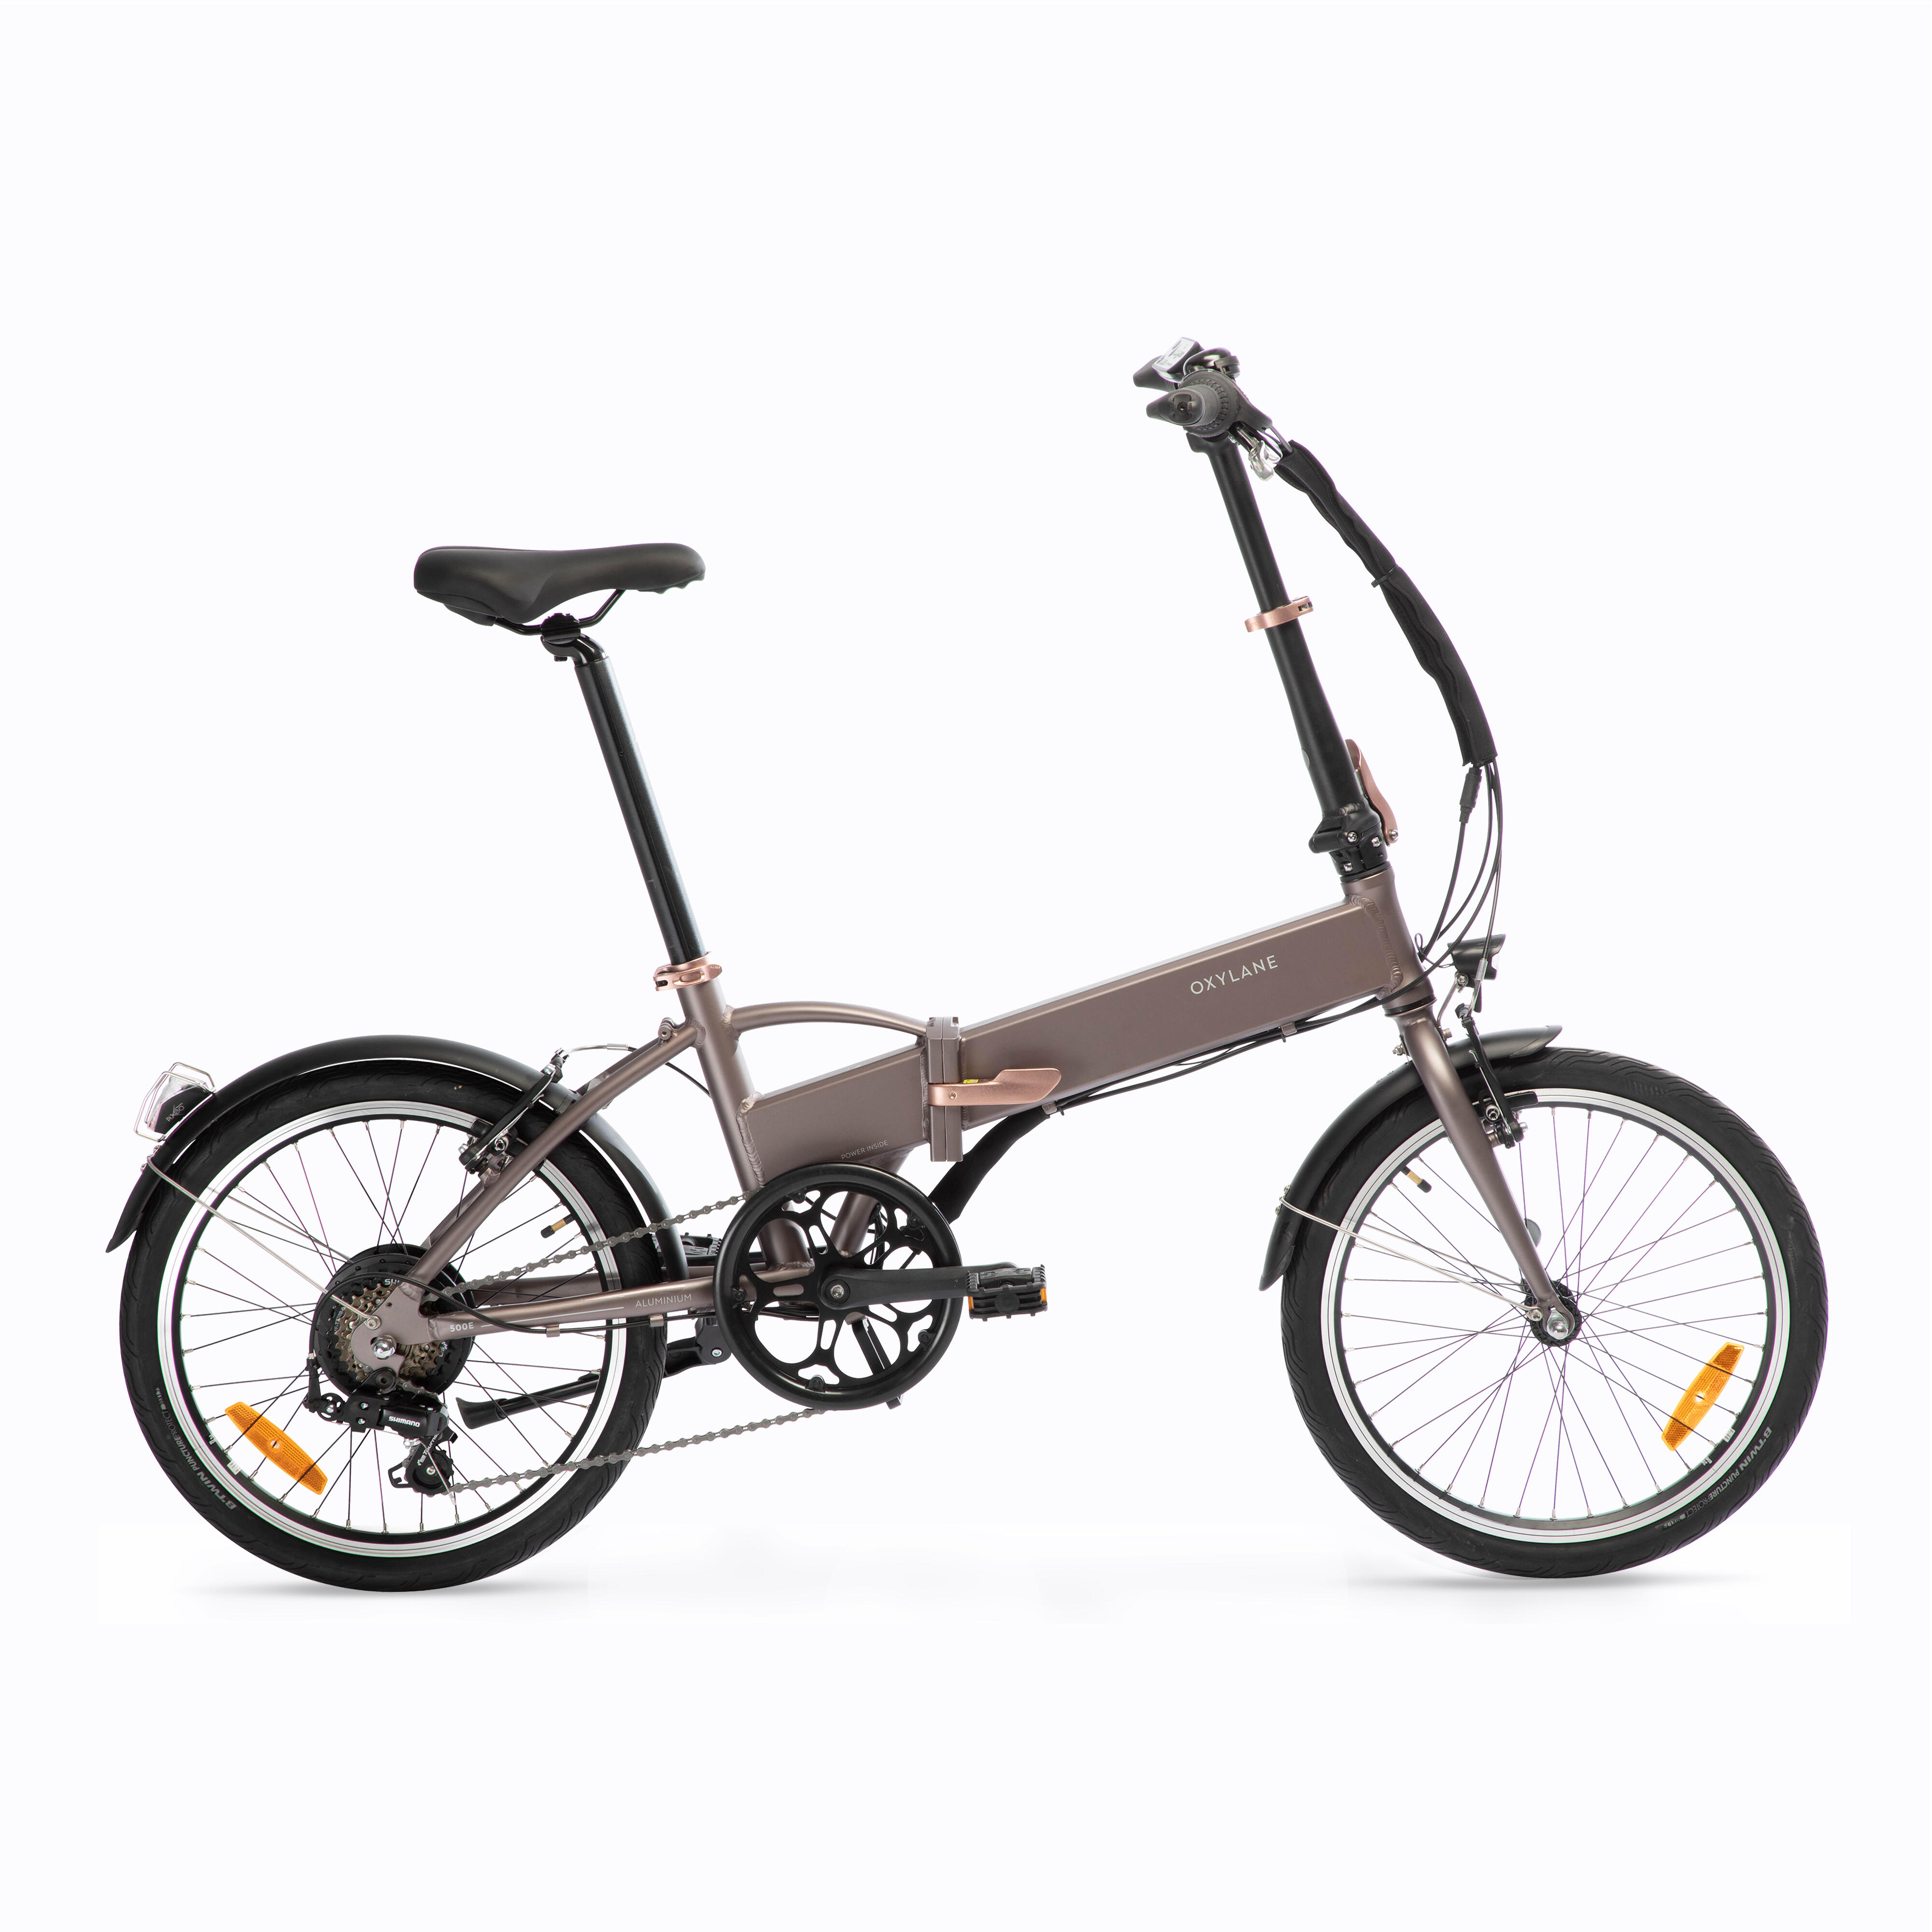 Bicicletă pliabilă cu asistență electrică TILT 500 E